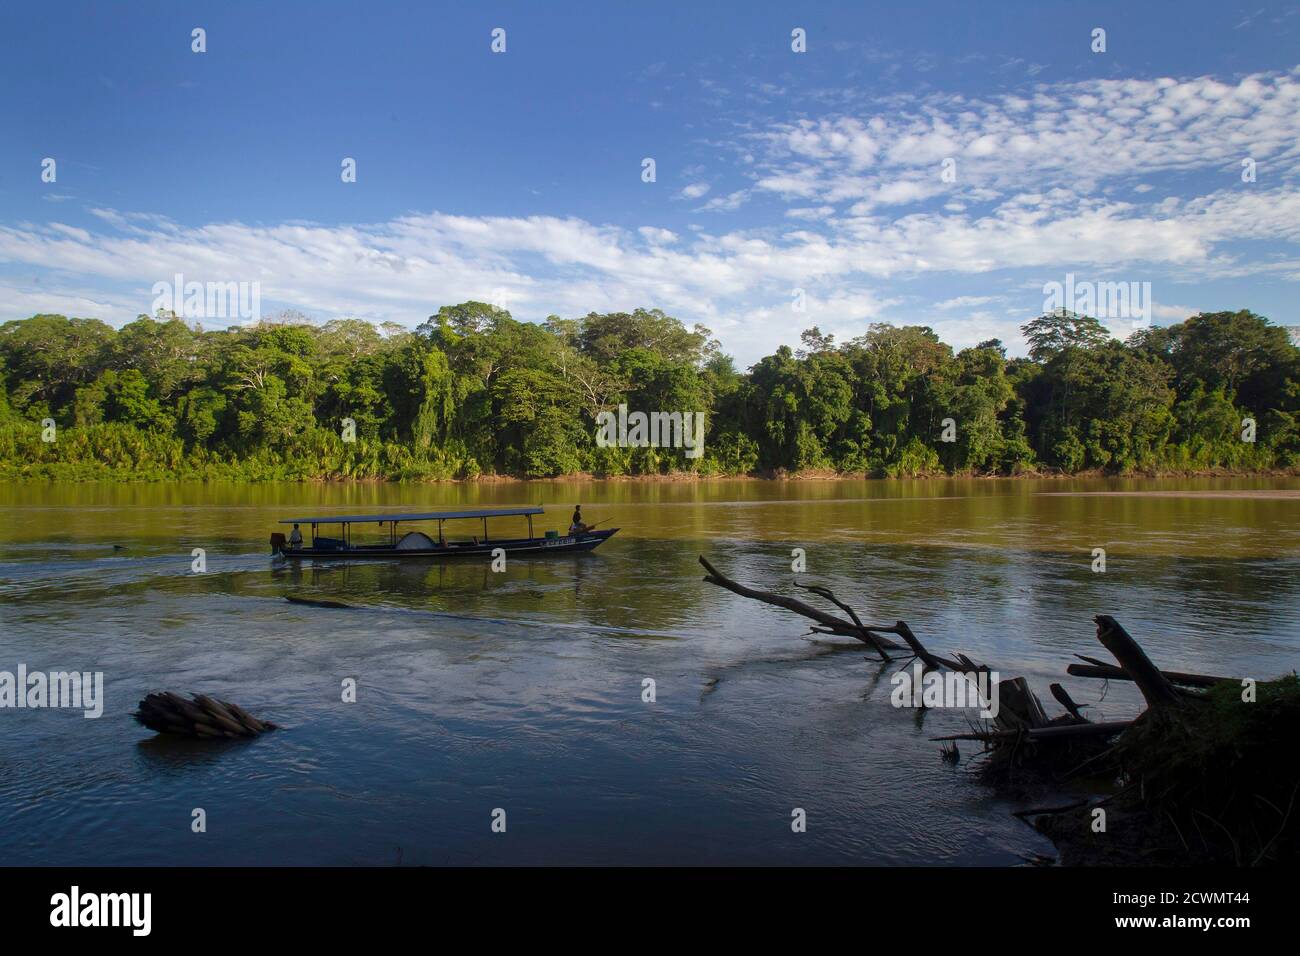 Ein Boot navigiert durch den Manu River in den Manu Nationalpark im  südlichen Amazonasgebiet Perus Madre De Dios 17. Juli 2014. Diese Reserve  1,8 Millionen Hektar ist der größte Nationalpark in Peru